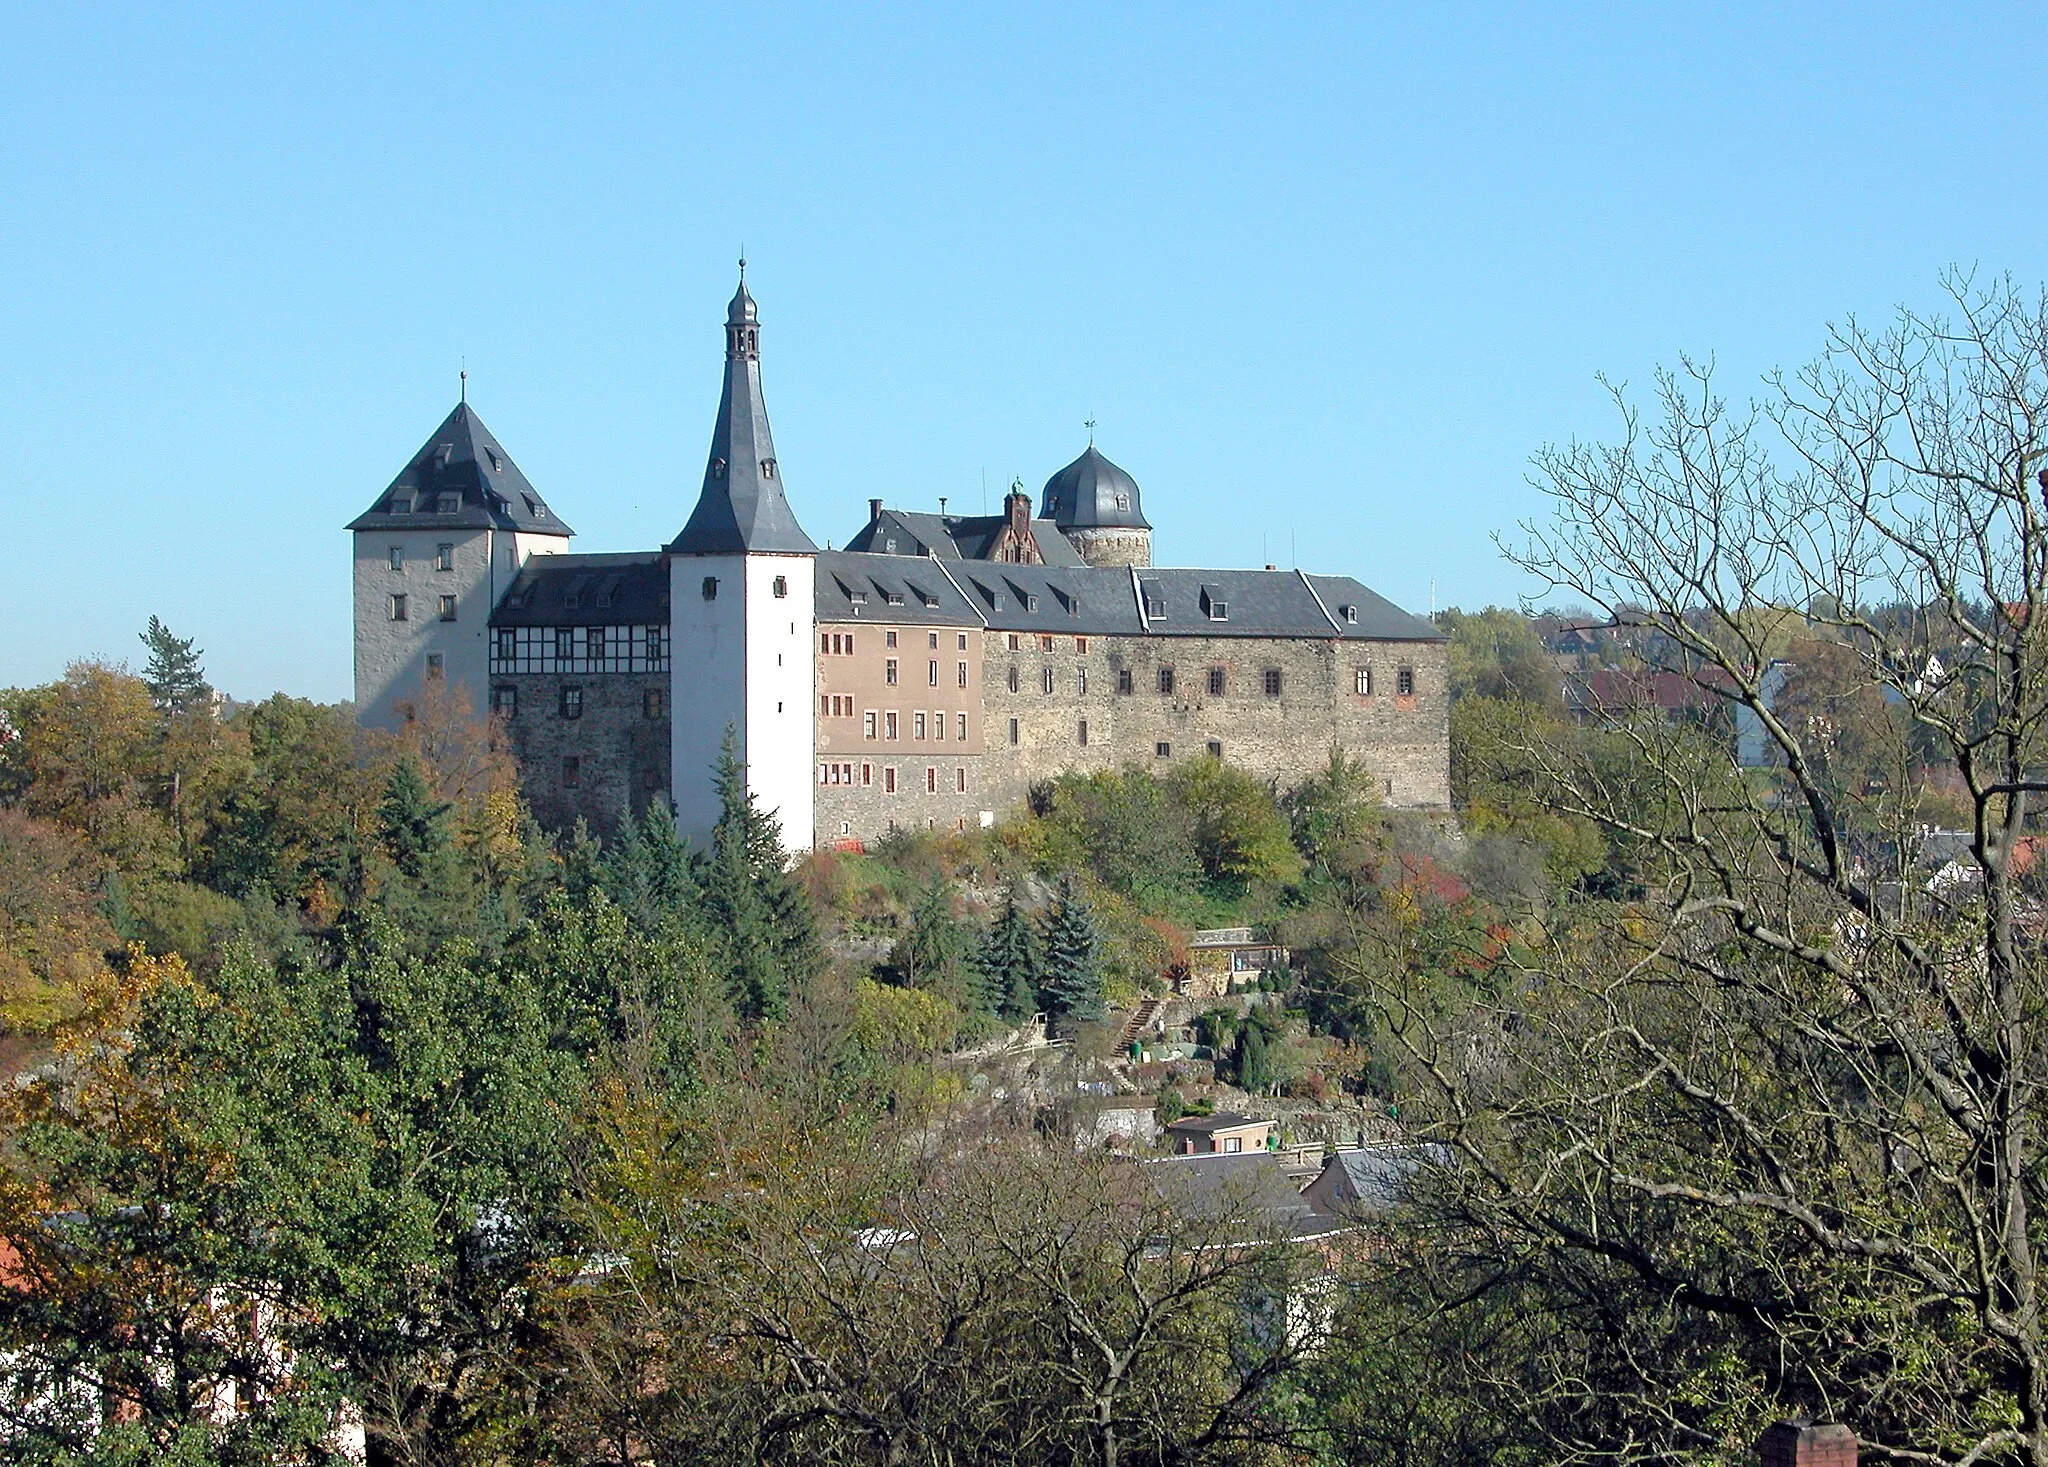 Photo showing: 15.10.2007  08499  Mylau, Burg 1: Burg (GMP: 50.618285,12.265690). Die Burg Mylau ist die größte Burg des Vogtlandes. Der in Mylau beschworene Kaisermythos gründet sich auf Kaiser Karl IV. (1316-1378), der die Burg 1367 erwarb und im gleichen Jahr besuchte. Die Burg indes ist älter und entstand schon um 1180. 1460 verkaufte Kurfürst Friedrich der Sanftmütige von Sachsen (1412-1464) das Schloß Mylau an die Metzsch, welche den Besitz bereits seit Ende des 14. Jahrhunderts als Amtleute verwaltet hatten. Unter ihnen vollzog sich der  Übergang zum Wohnschloß. Nach mehreren Eigentümerwechseln übernahm 1792 Johann Friedrich Golle den Besitz. Ihn interessierte vor allem das zur Burg gehörende Vorwerk in Obermylau. Die Burg verfiel. Zwischen 1808 und 1828 betrieb der Mylauer Textilunternehmer Christian Gotthelf Brückner in den Burggebäuden eine große Baumwoll-spinnerei. Der alte Glanz lebte auf, als die Stadt Mylau 1892 das Rittergut Mylau und damit auch die Burg kaufte. Die Instandsetzung der "Kaiserburg", die bis 1909 andauerte, war mit einem historisierenden Um- und Neubau der Burggebäude verbunden. Neben dem Bergfried wurde 1894 bis 1896 anstelle des Palas der mittelalterlichen Burg das Rathaus der Stadt 
Mylau errichtet. Heute wird die Burg als Museum genutzt. Sicht von Westen                                                                                            [DSCN30670.TIF]20071015260DR.JPG(c)Blobelt